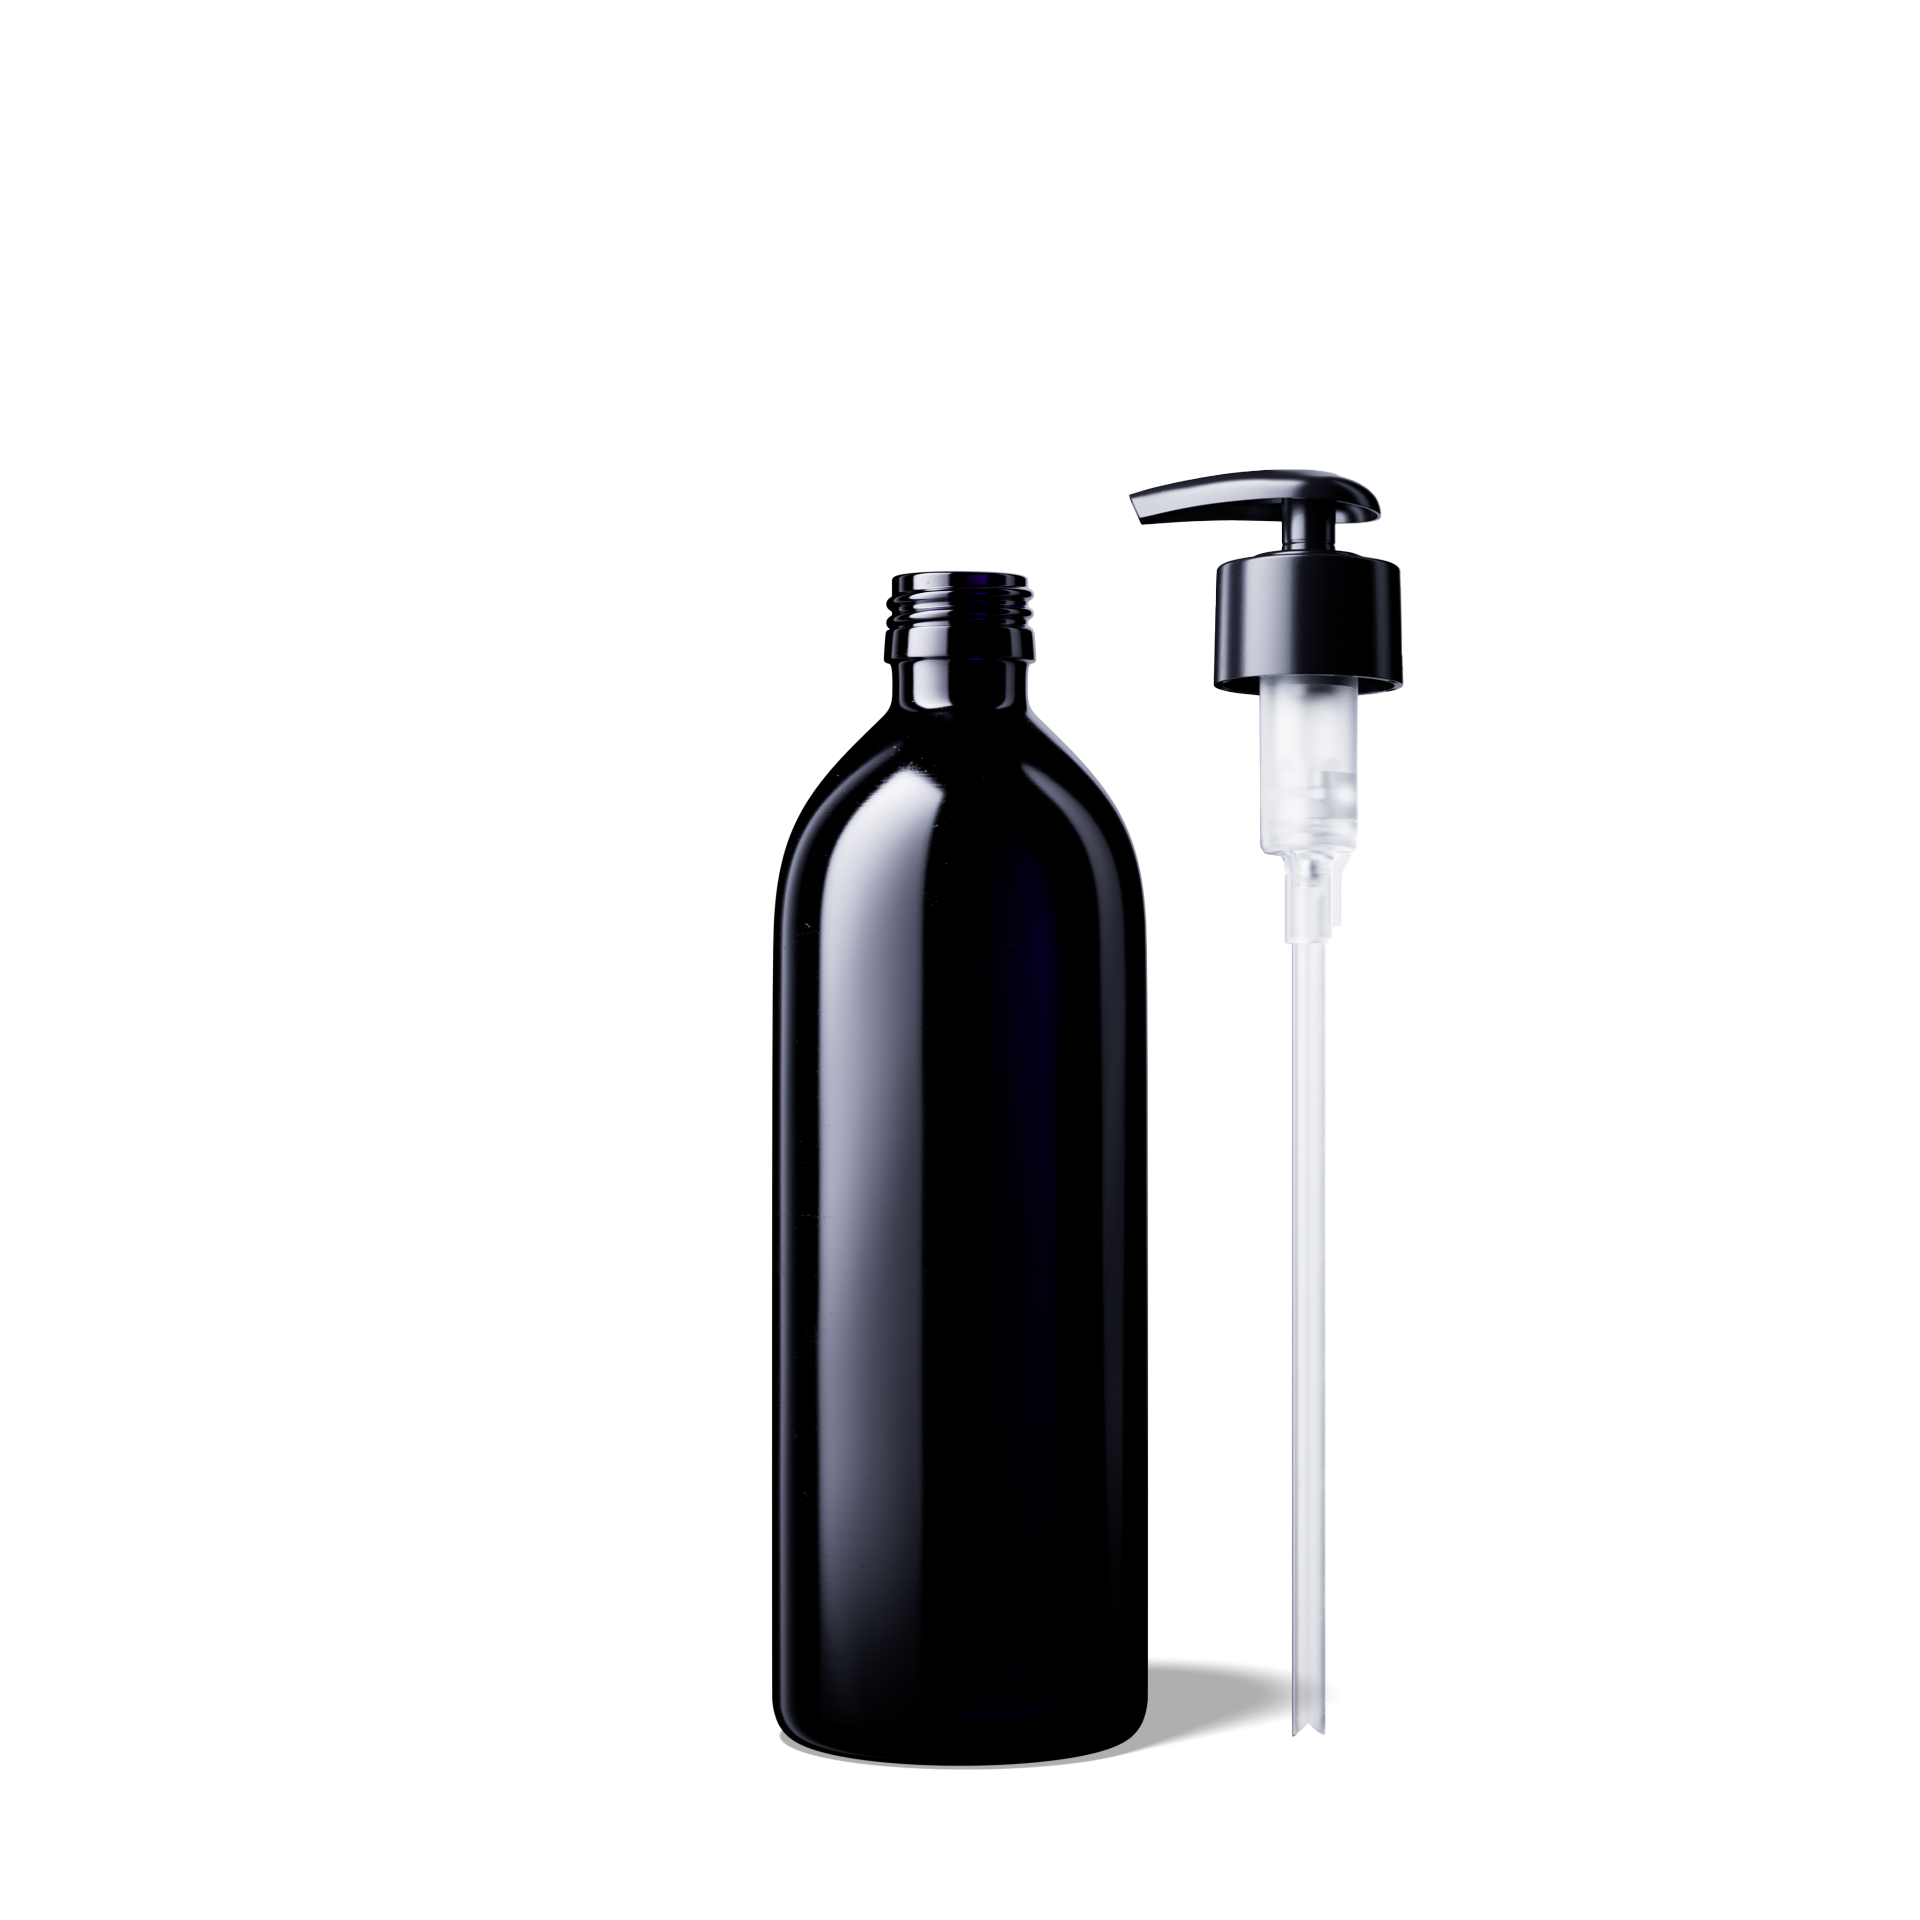 Wasserflaschen Aquarius 500 ml inkl. Dosierpumpe 2.0ml